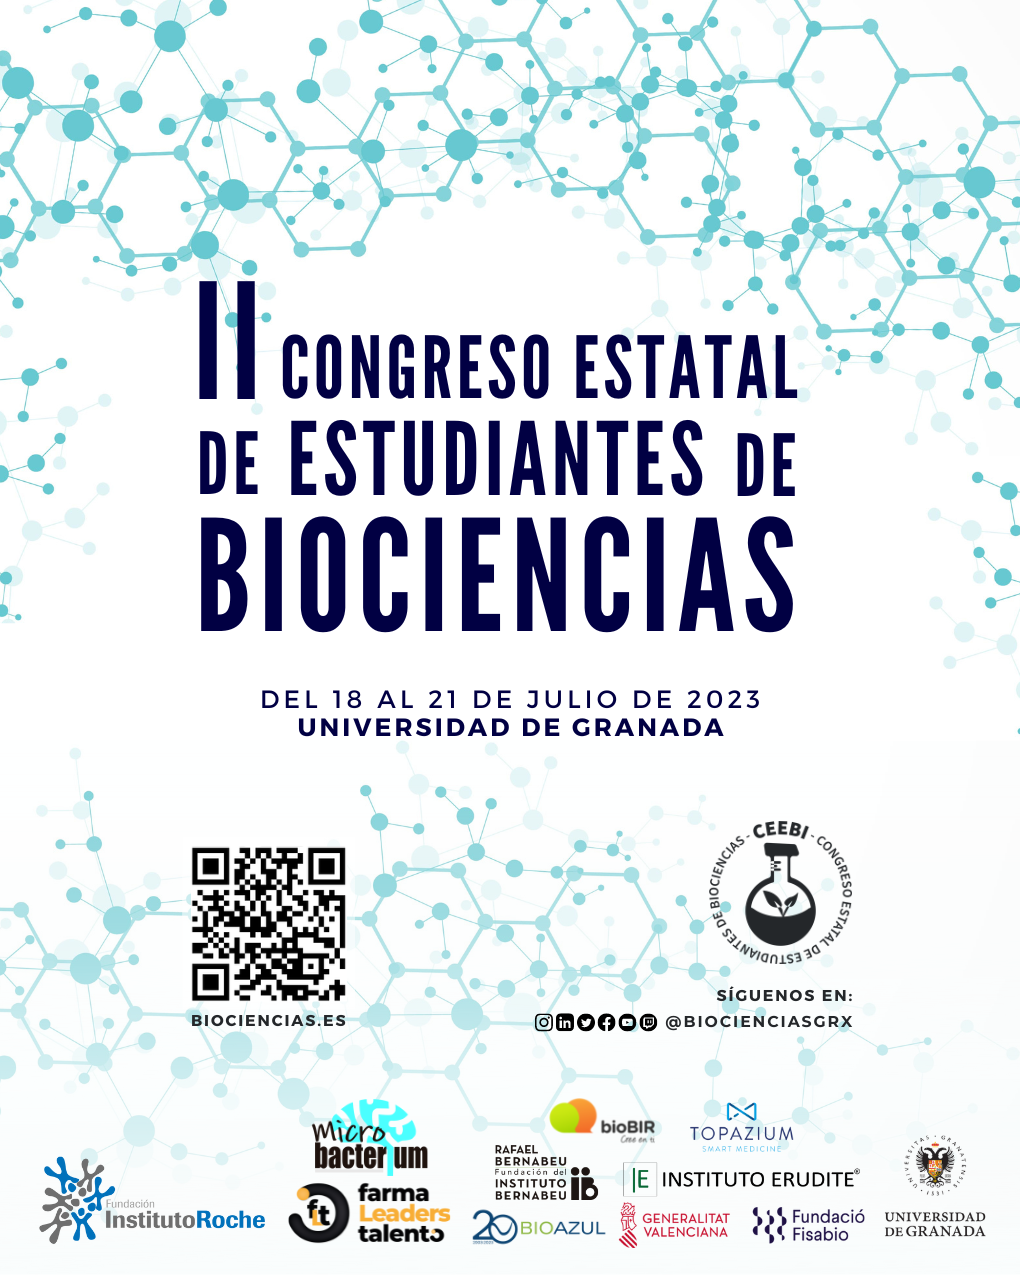 II Congreso Estatal de Estudiantes de Biociencias. 18  al 21 de julio de 2023. Universidad de Granada.